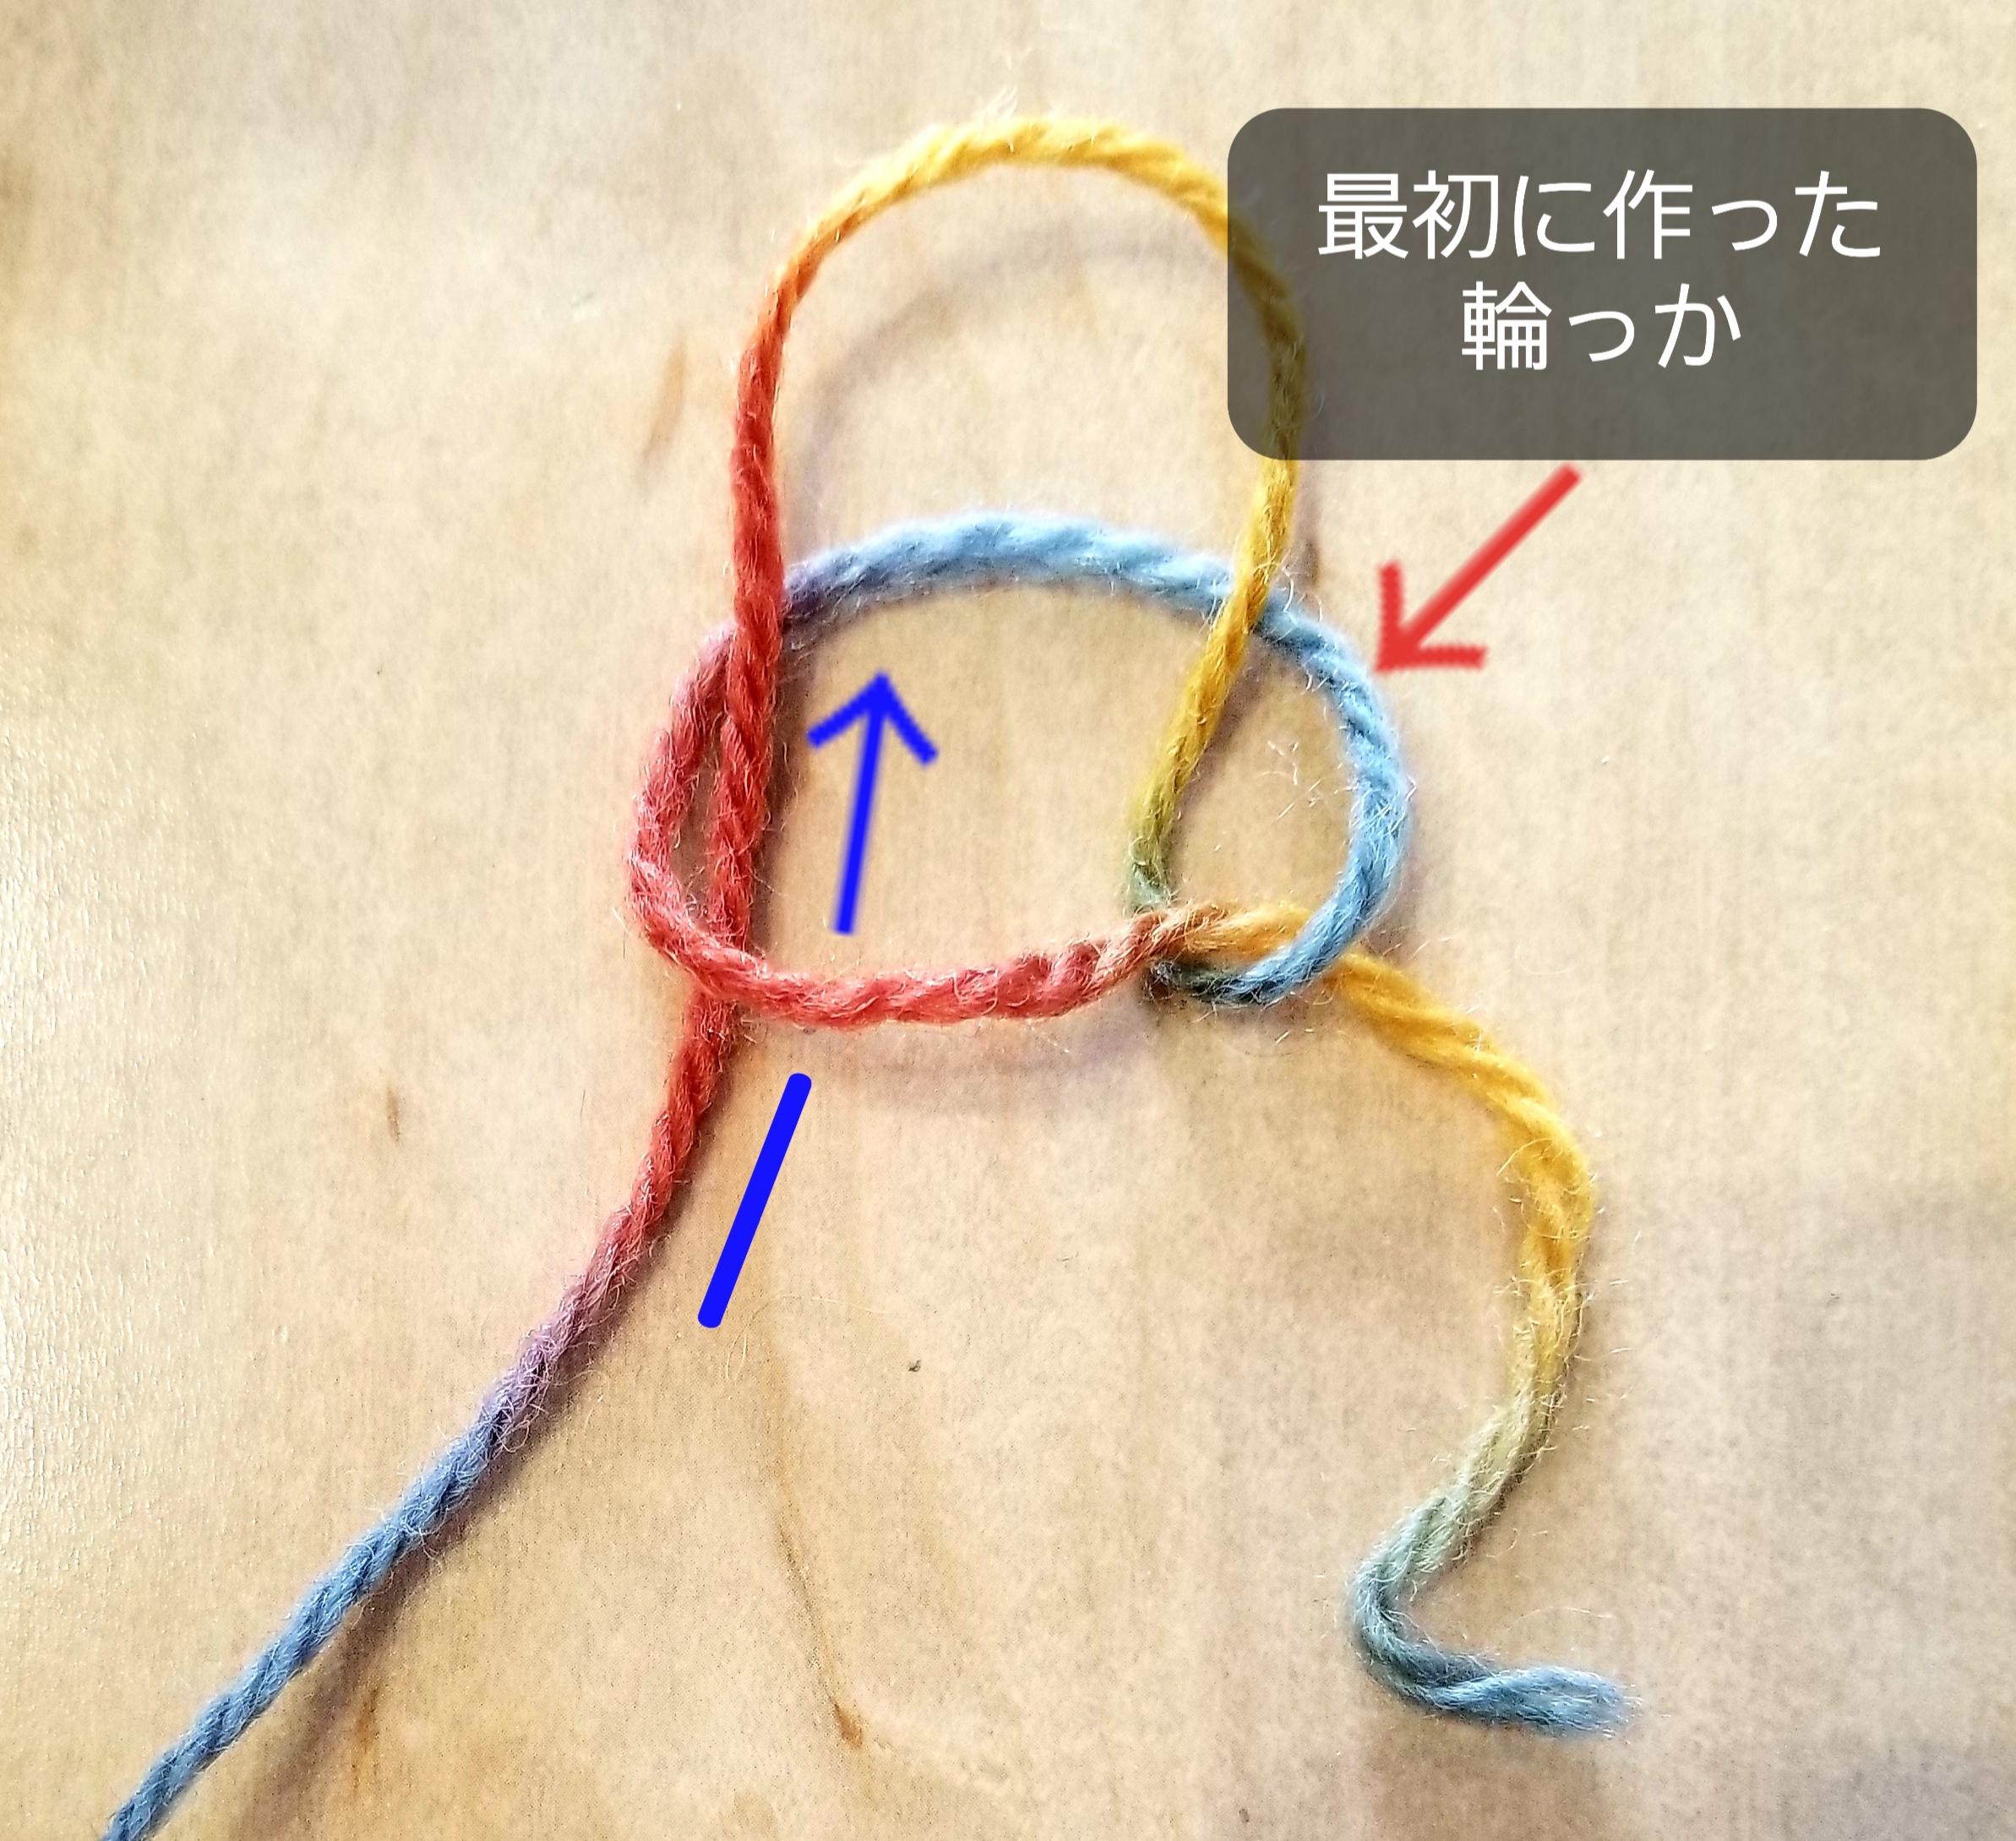 あやとり紐の作り方 指編みで簡単に結び目の目立たないあやとり紐を作ろう 困ったときの手作りサイト 整理収納から子どもの玩具や踏み台までdiy